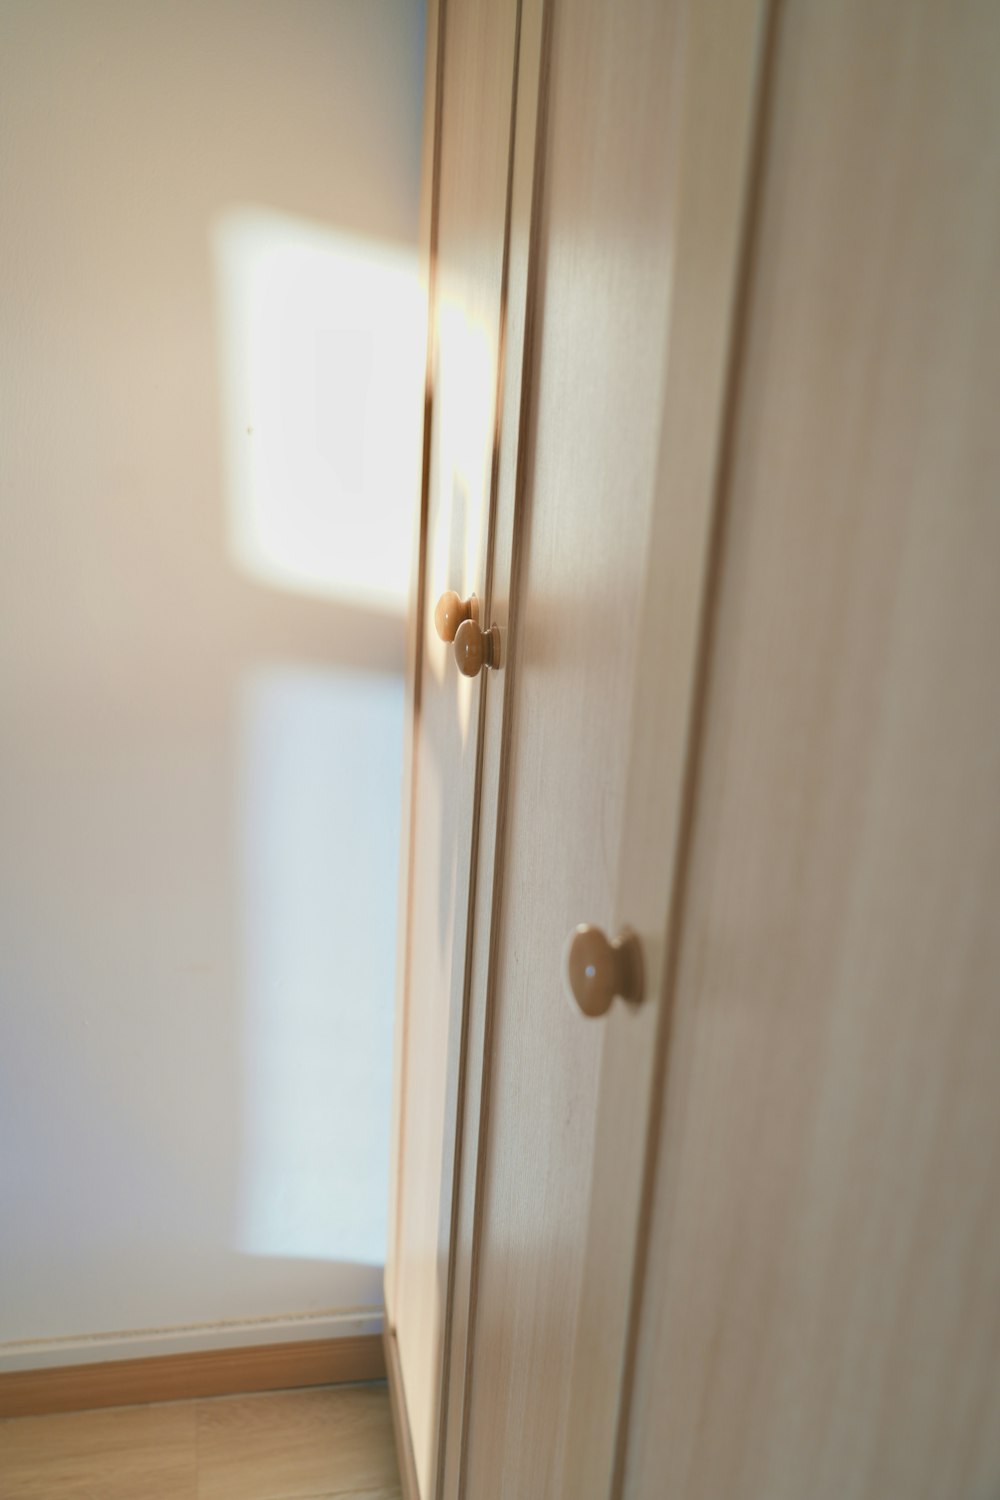 a door with a handle